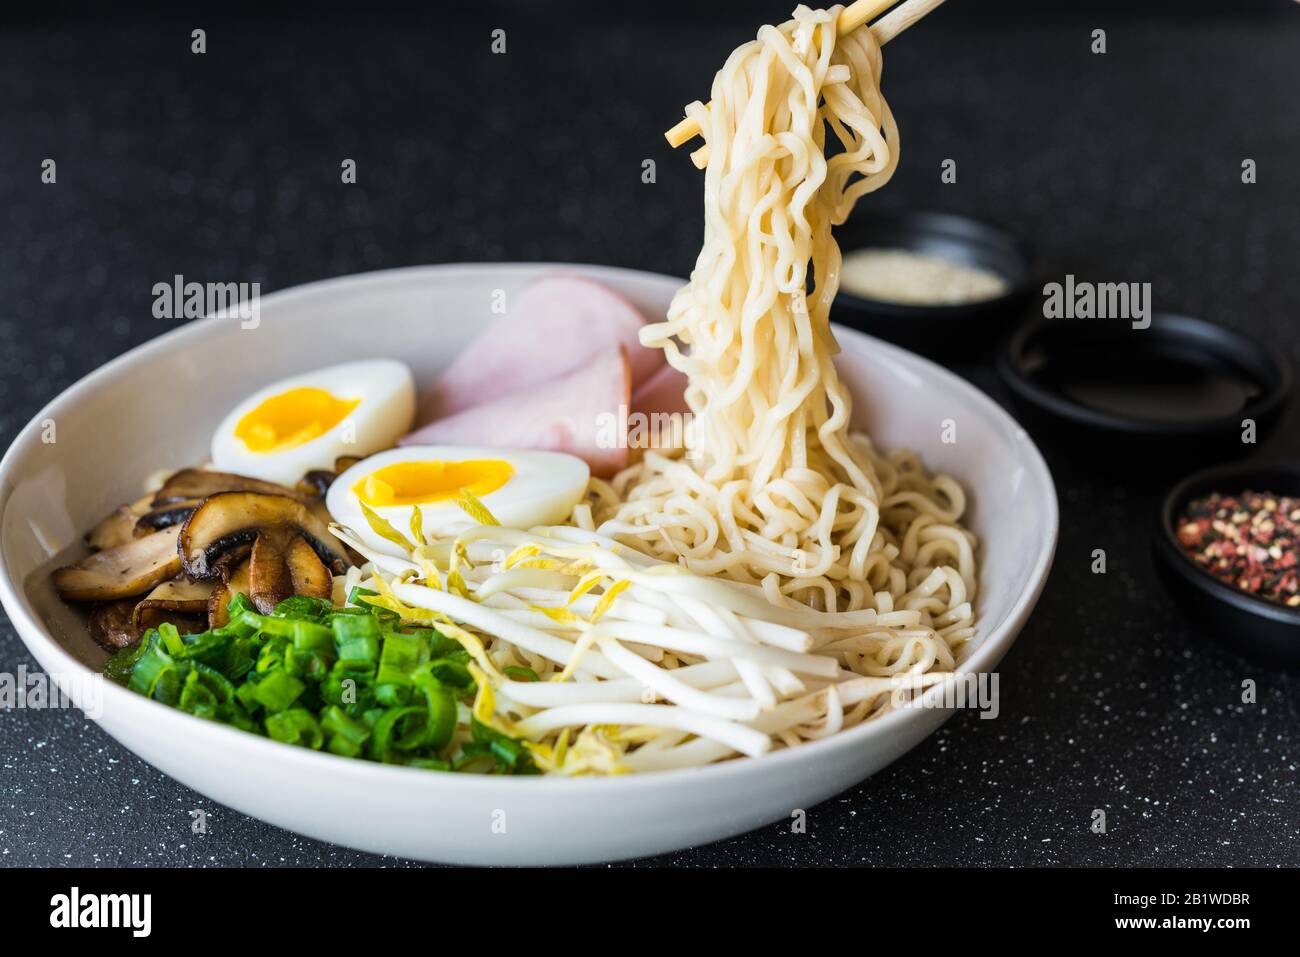 Eine Schüssel mit asiatischem Essen rammen Nudeln Suppe vor schwarzem  Steinhintergrund Stockfotografie - Alamy